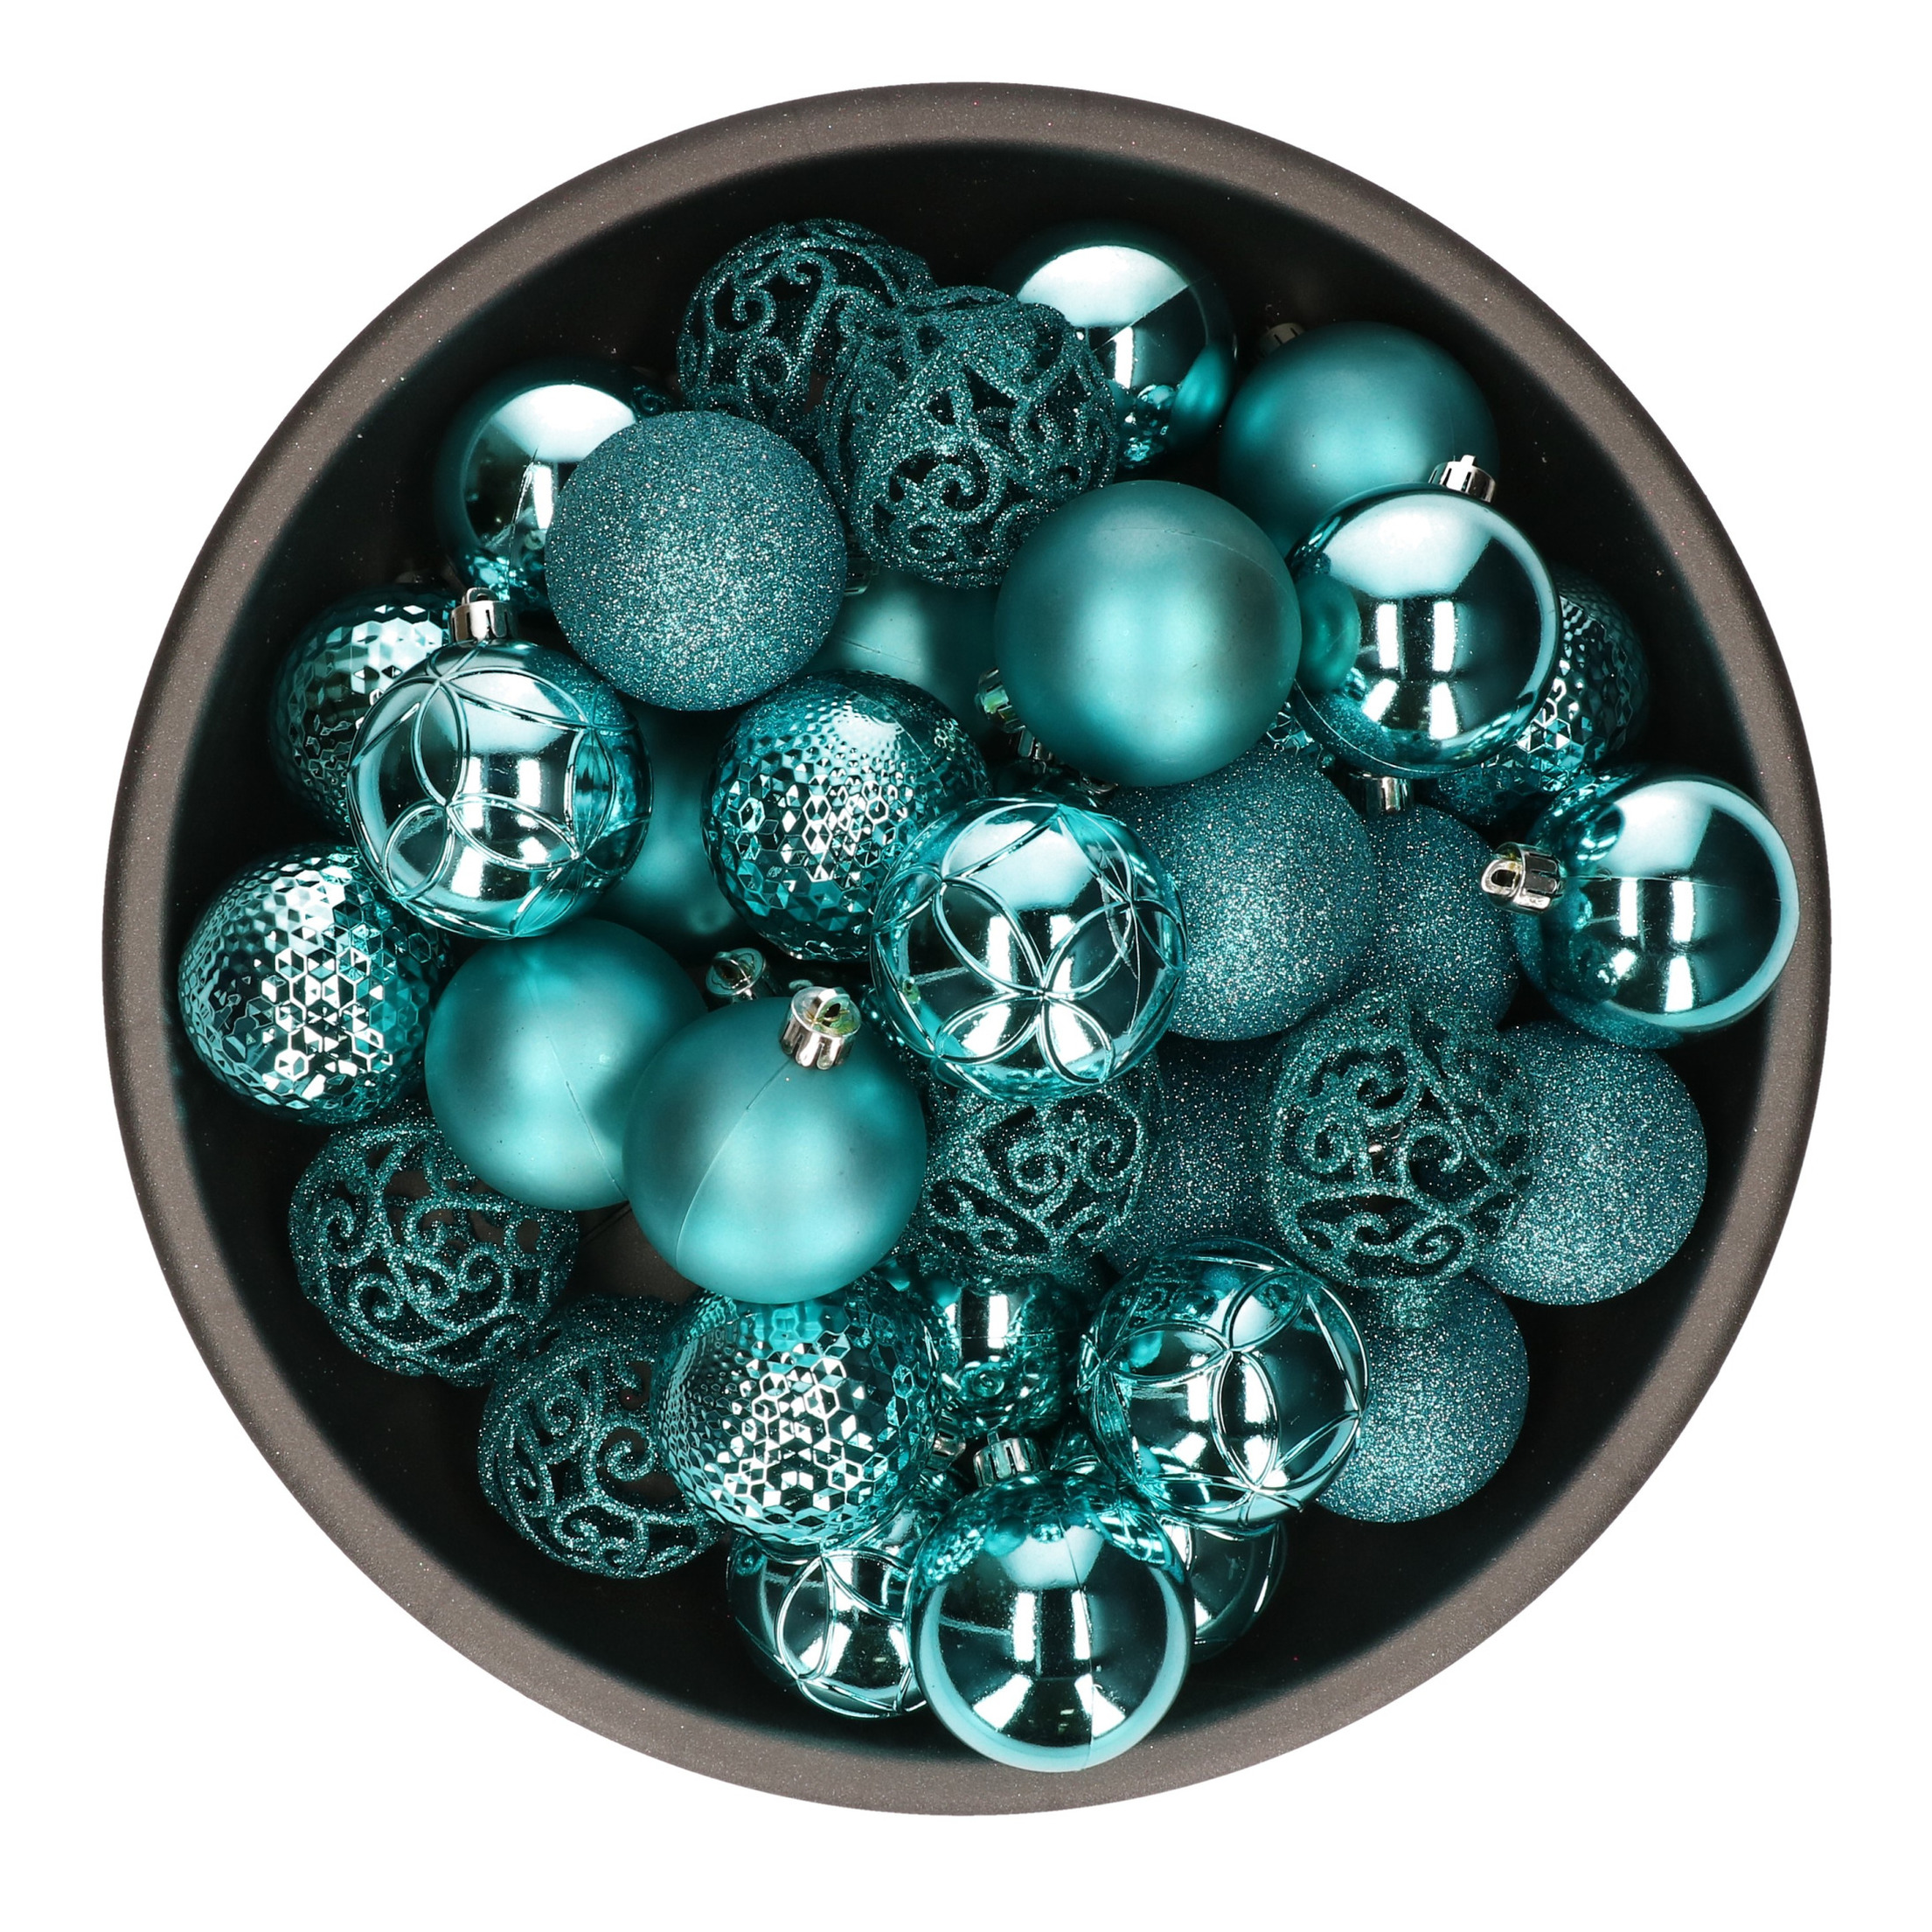 37x stuks kunststof kerstballen turquoise blauw 6 cm glans-mat-glitter mix